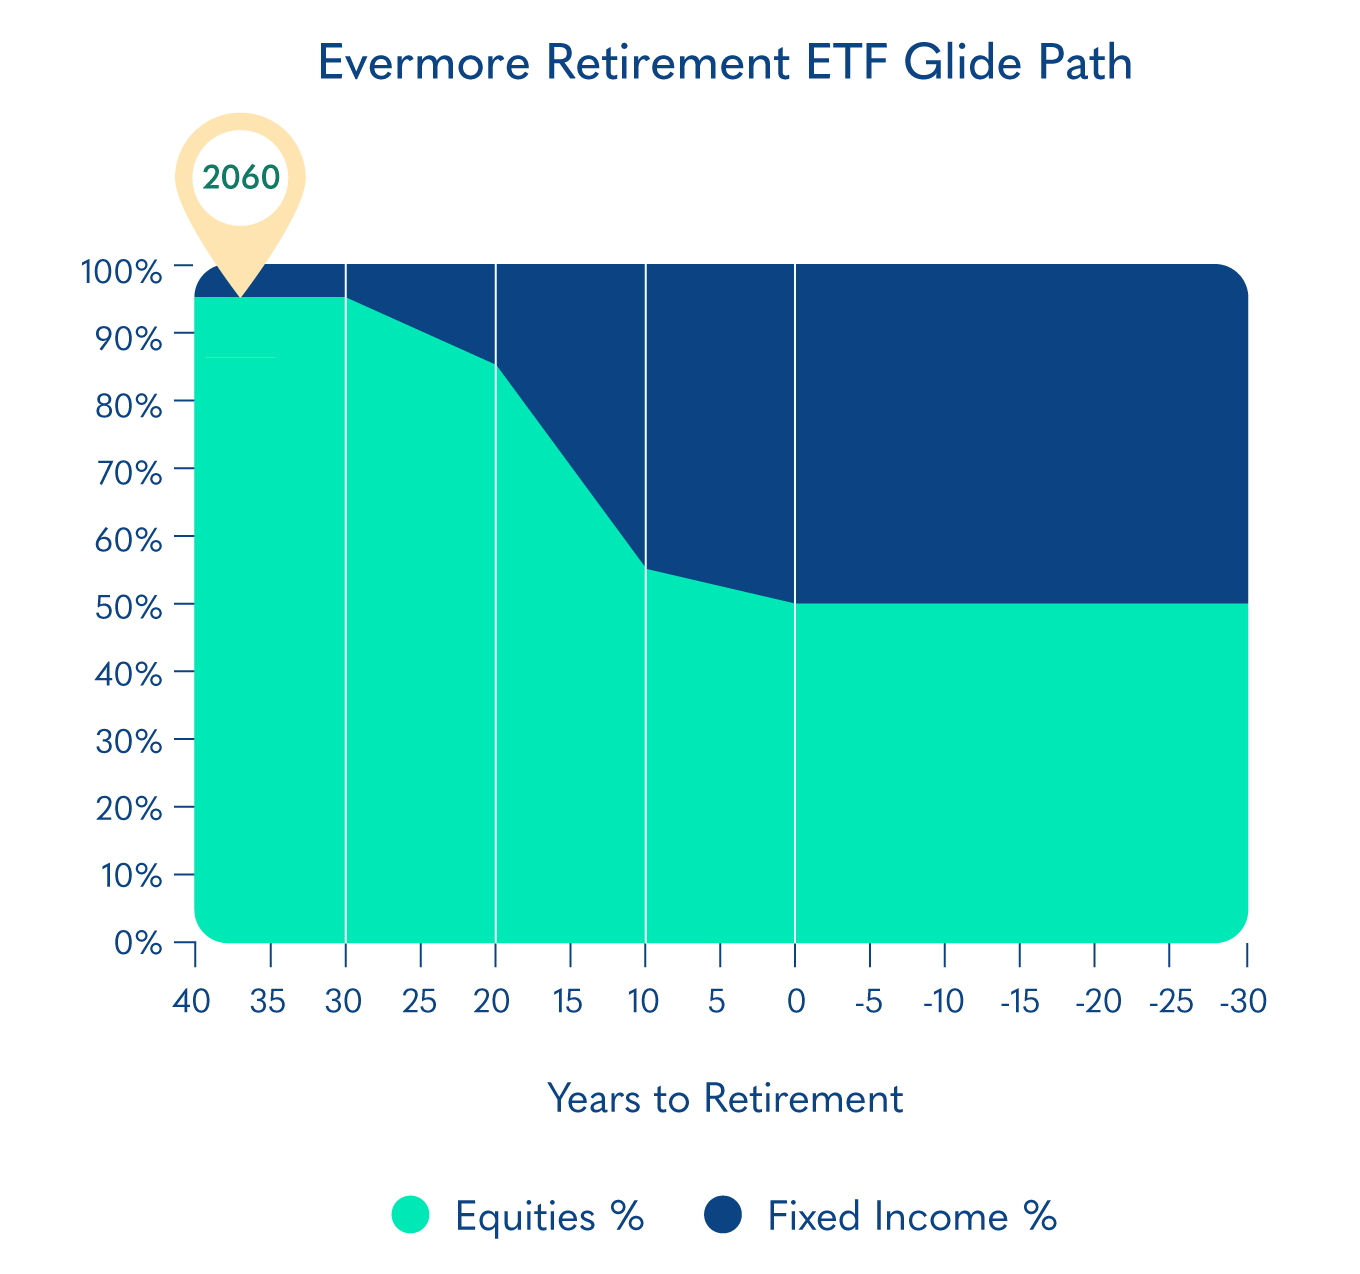 Evermore Retirement 2060 ERGO Glide Path